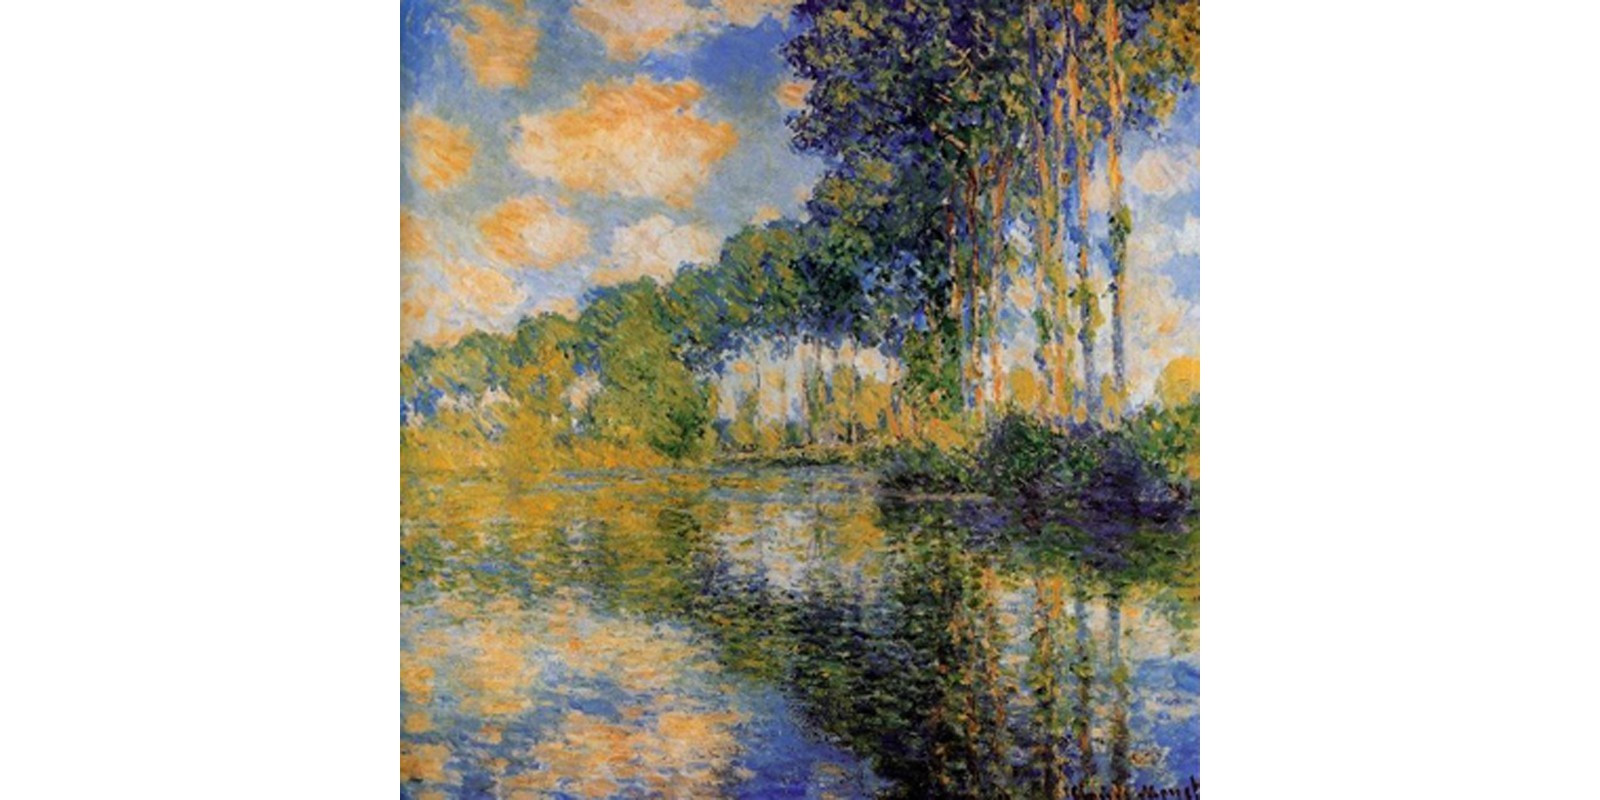 Claude Monet - Pioppi sulla riva dell' Epte